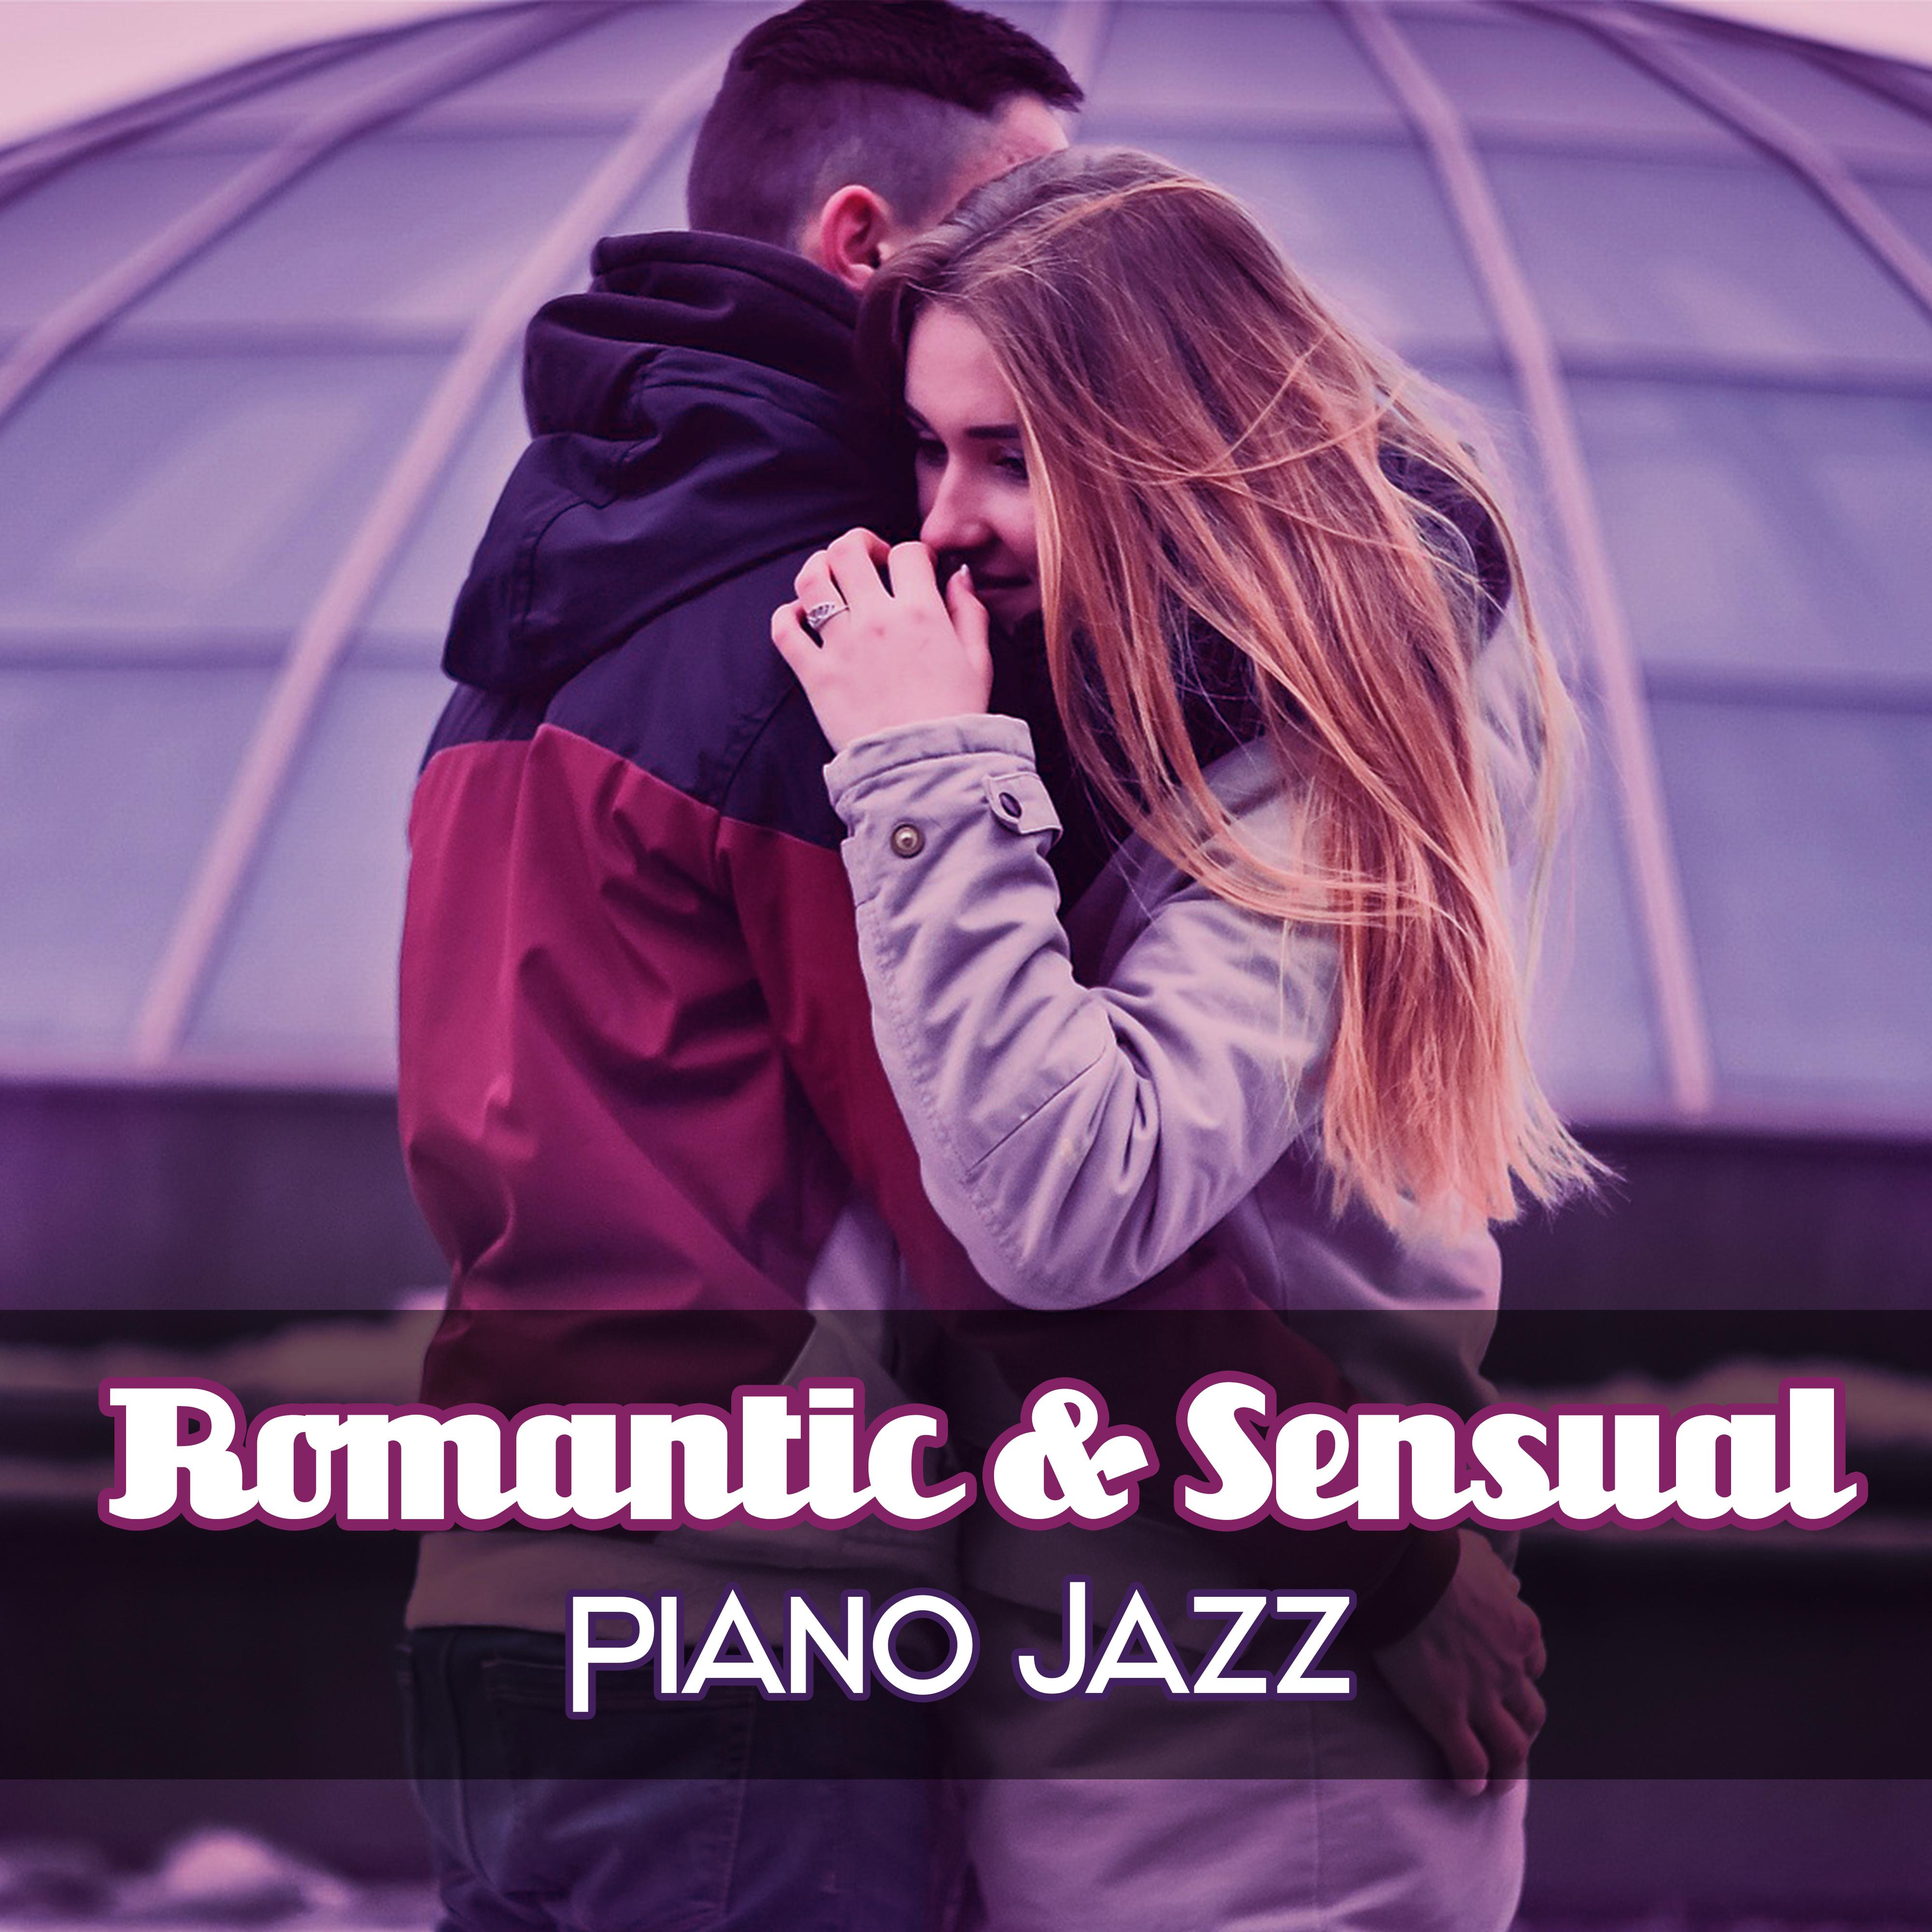 Romantic  Sensual Piano Jazz  Soothing Piano Jazz, Restaurant Background Music, Love Jazz Music